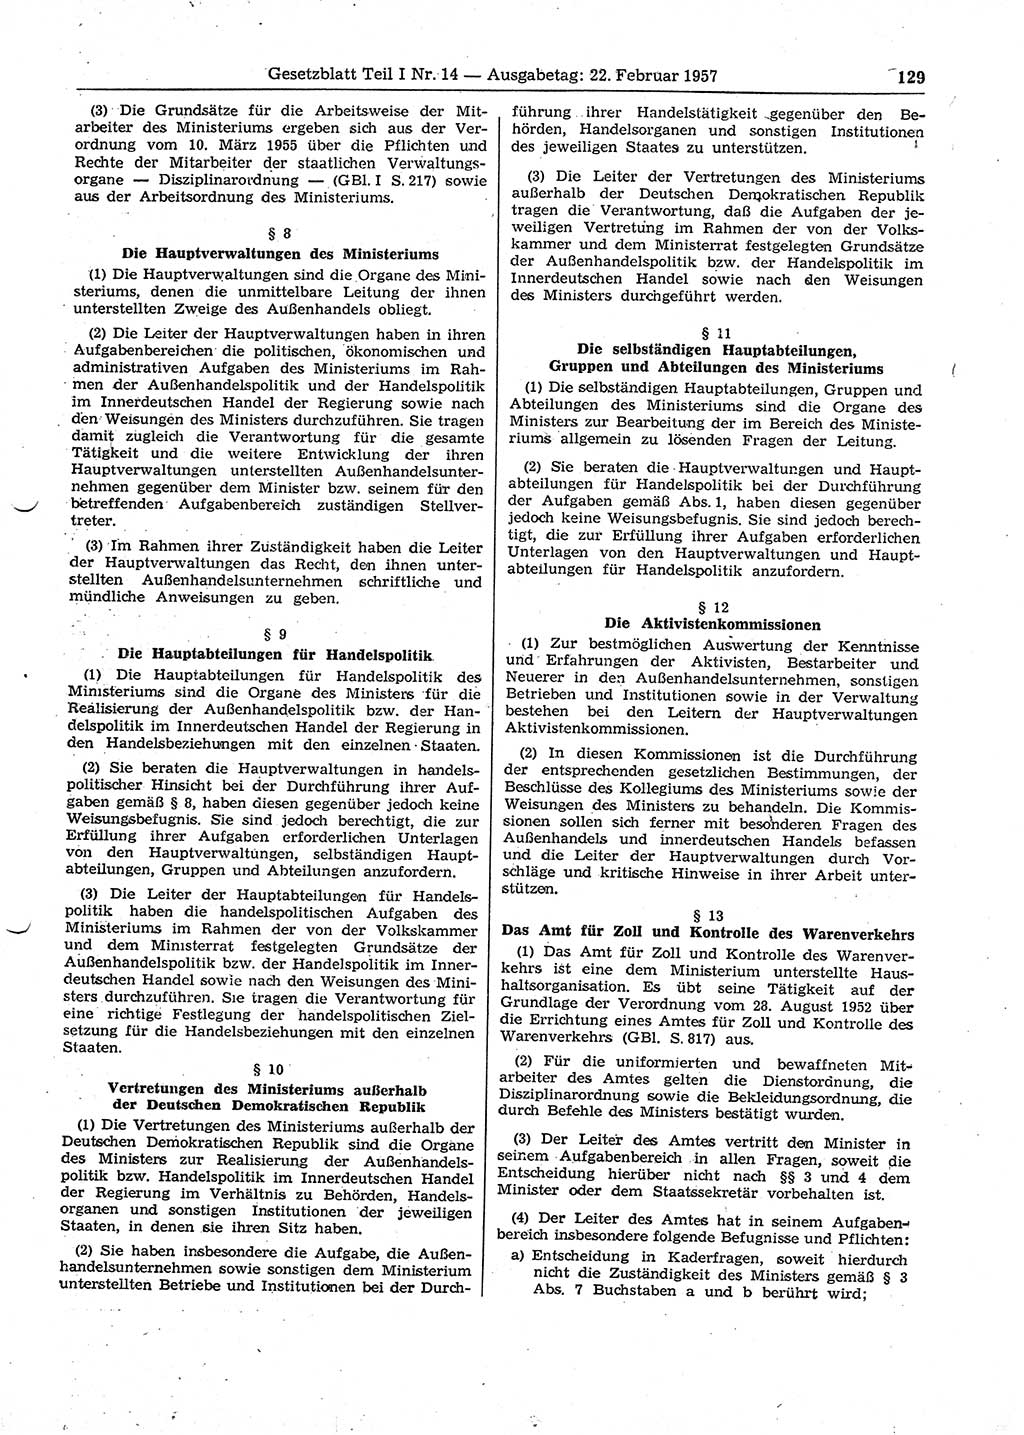 Gesetzblatt (GBl.) der Deutschen Demokratischen Republik (DDR) Teil Ⅰ 1957, Seite 129 (GBl. DDR Ⅰ 1957, S. 129)